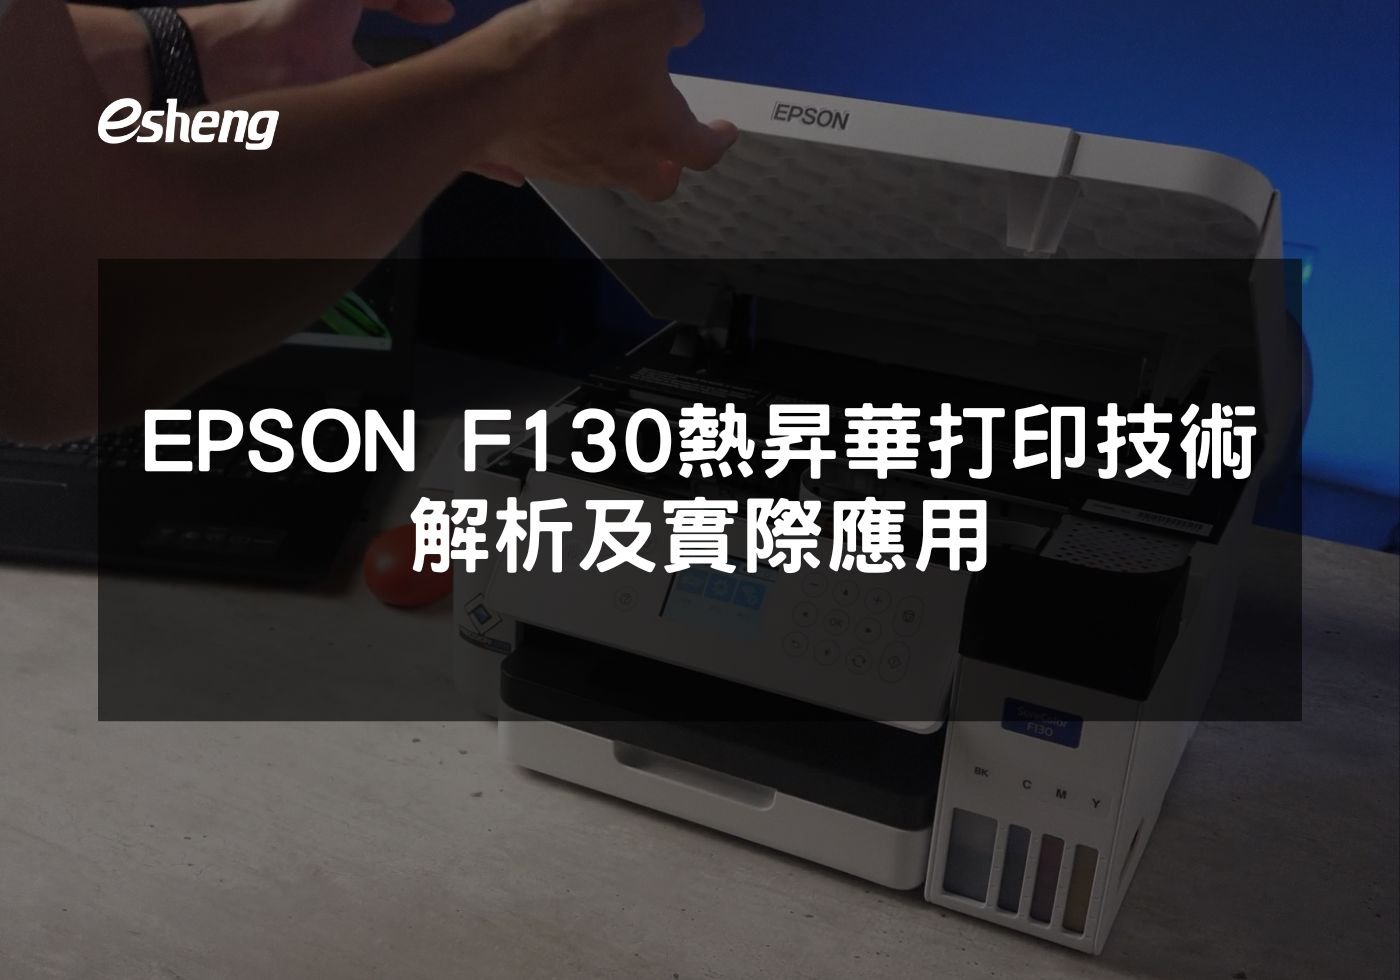 閱讀更多文章 EPSON F130 熱昇華打印技術解析及實際應用